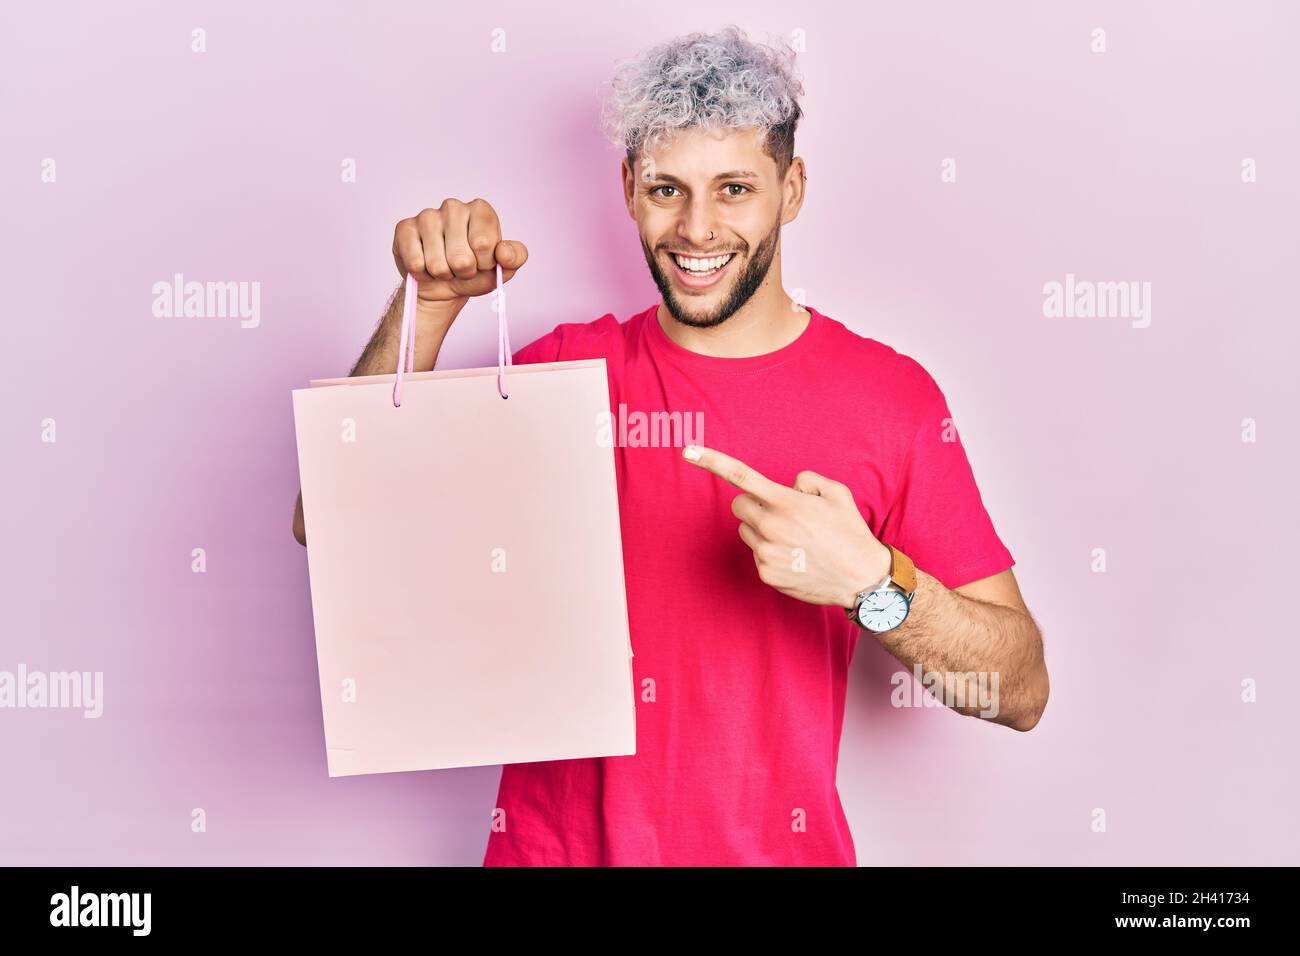 Junger hispanischer Mann mit modernen gefärbten Haaren hält Einkaufstasche lächelnd glücklich zeigt mit Hand und Finger Stockfoto